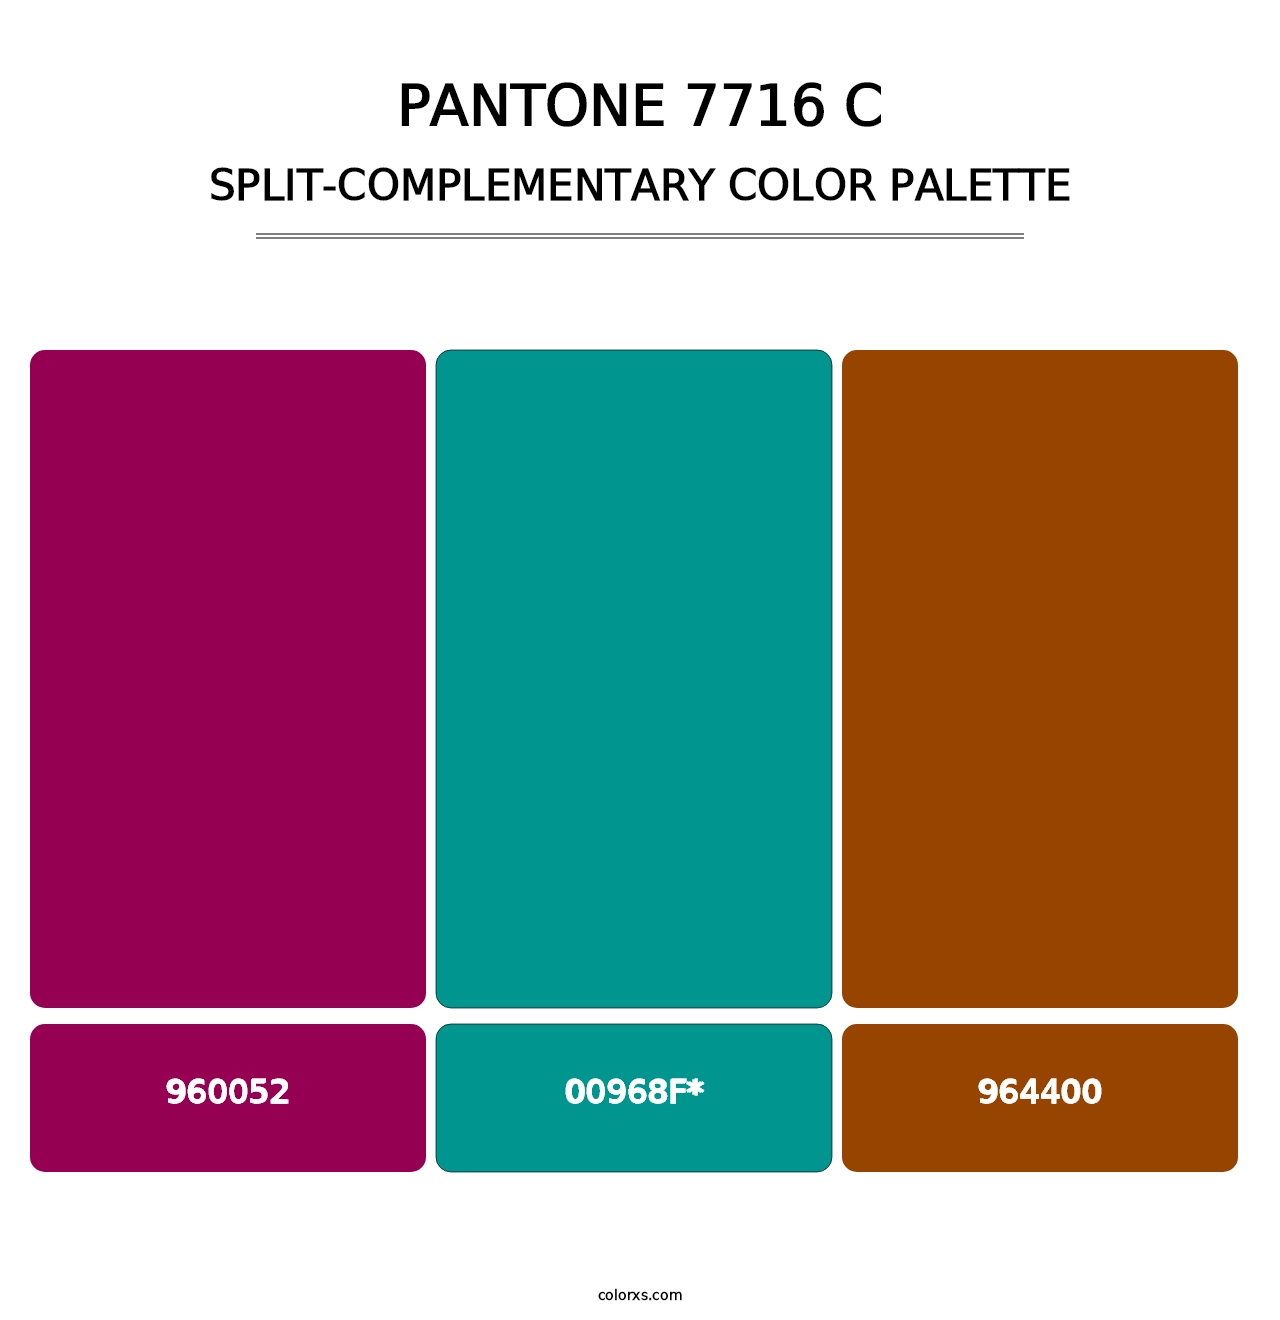 PANTONE 7716 C - Split-Complementary Color Palette